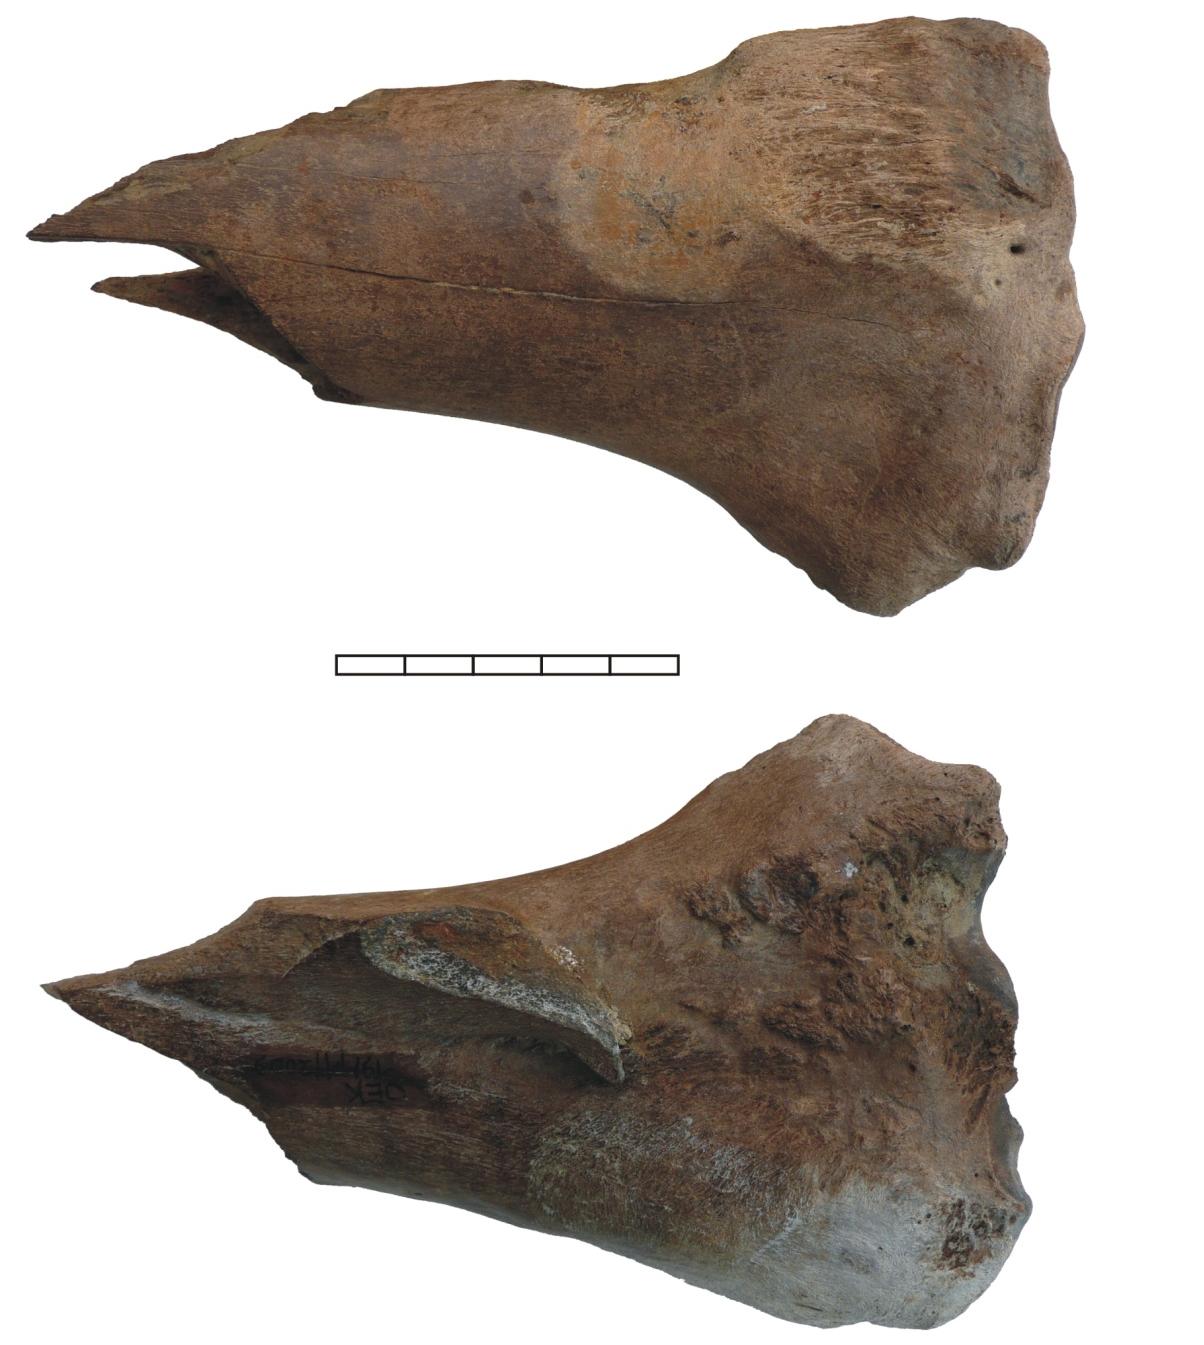 Foto 8: Bison priscus hoornpit met deel schedel